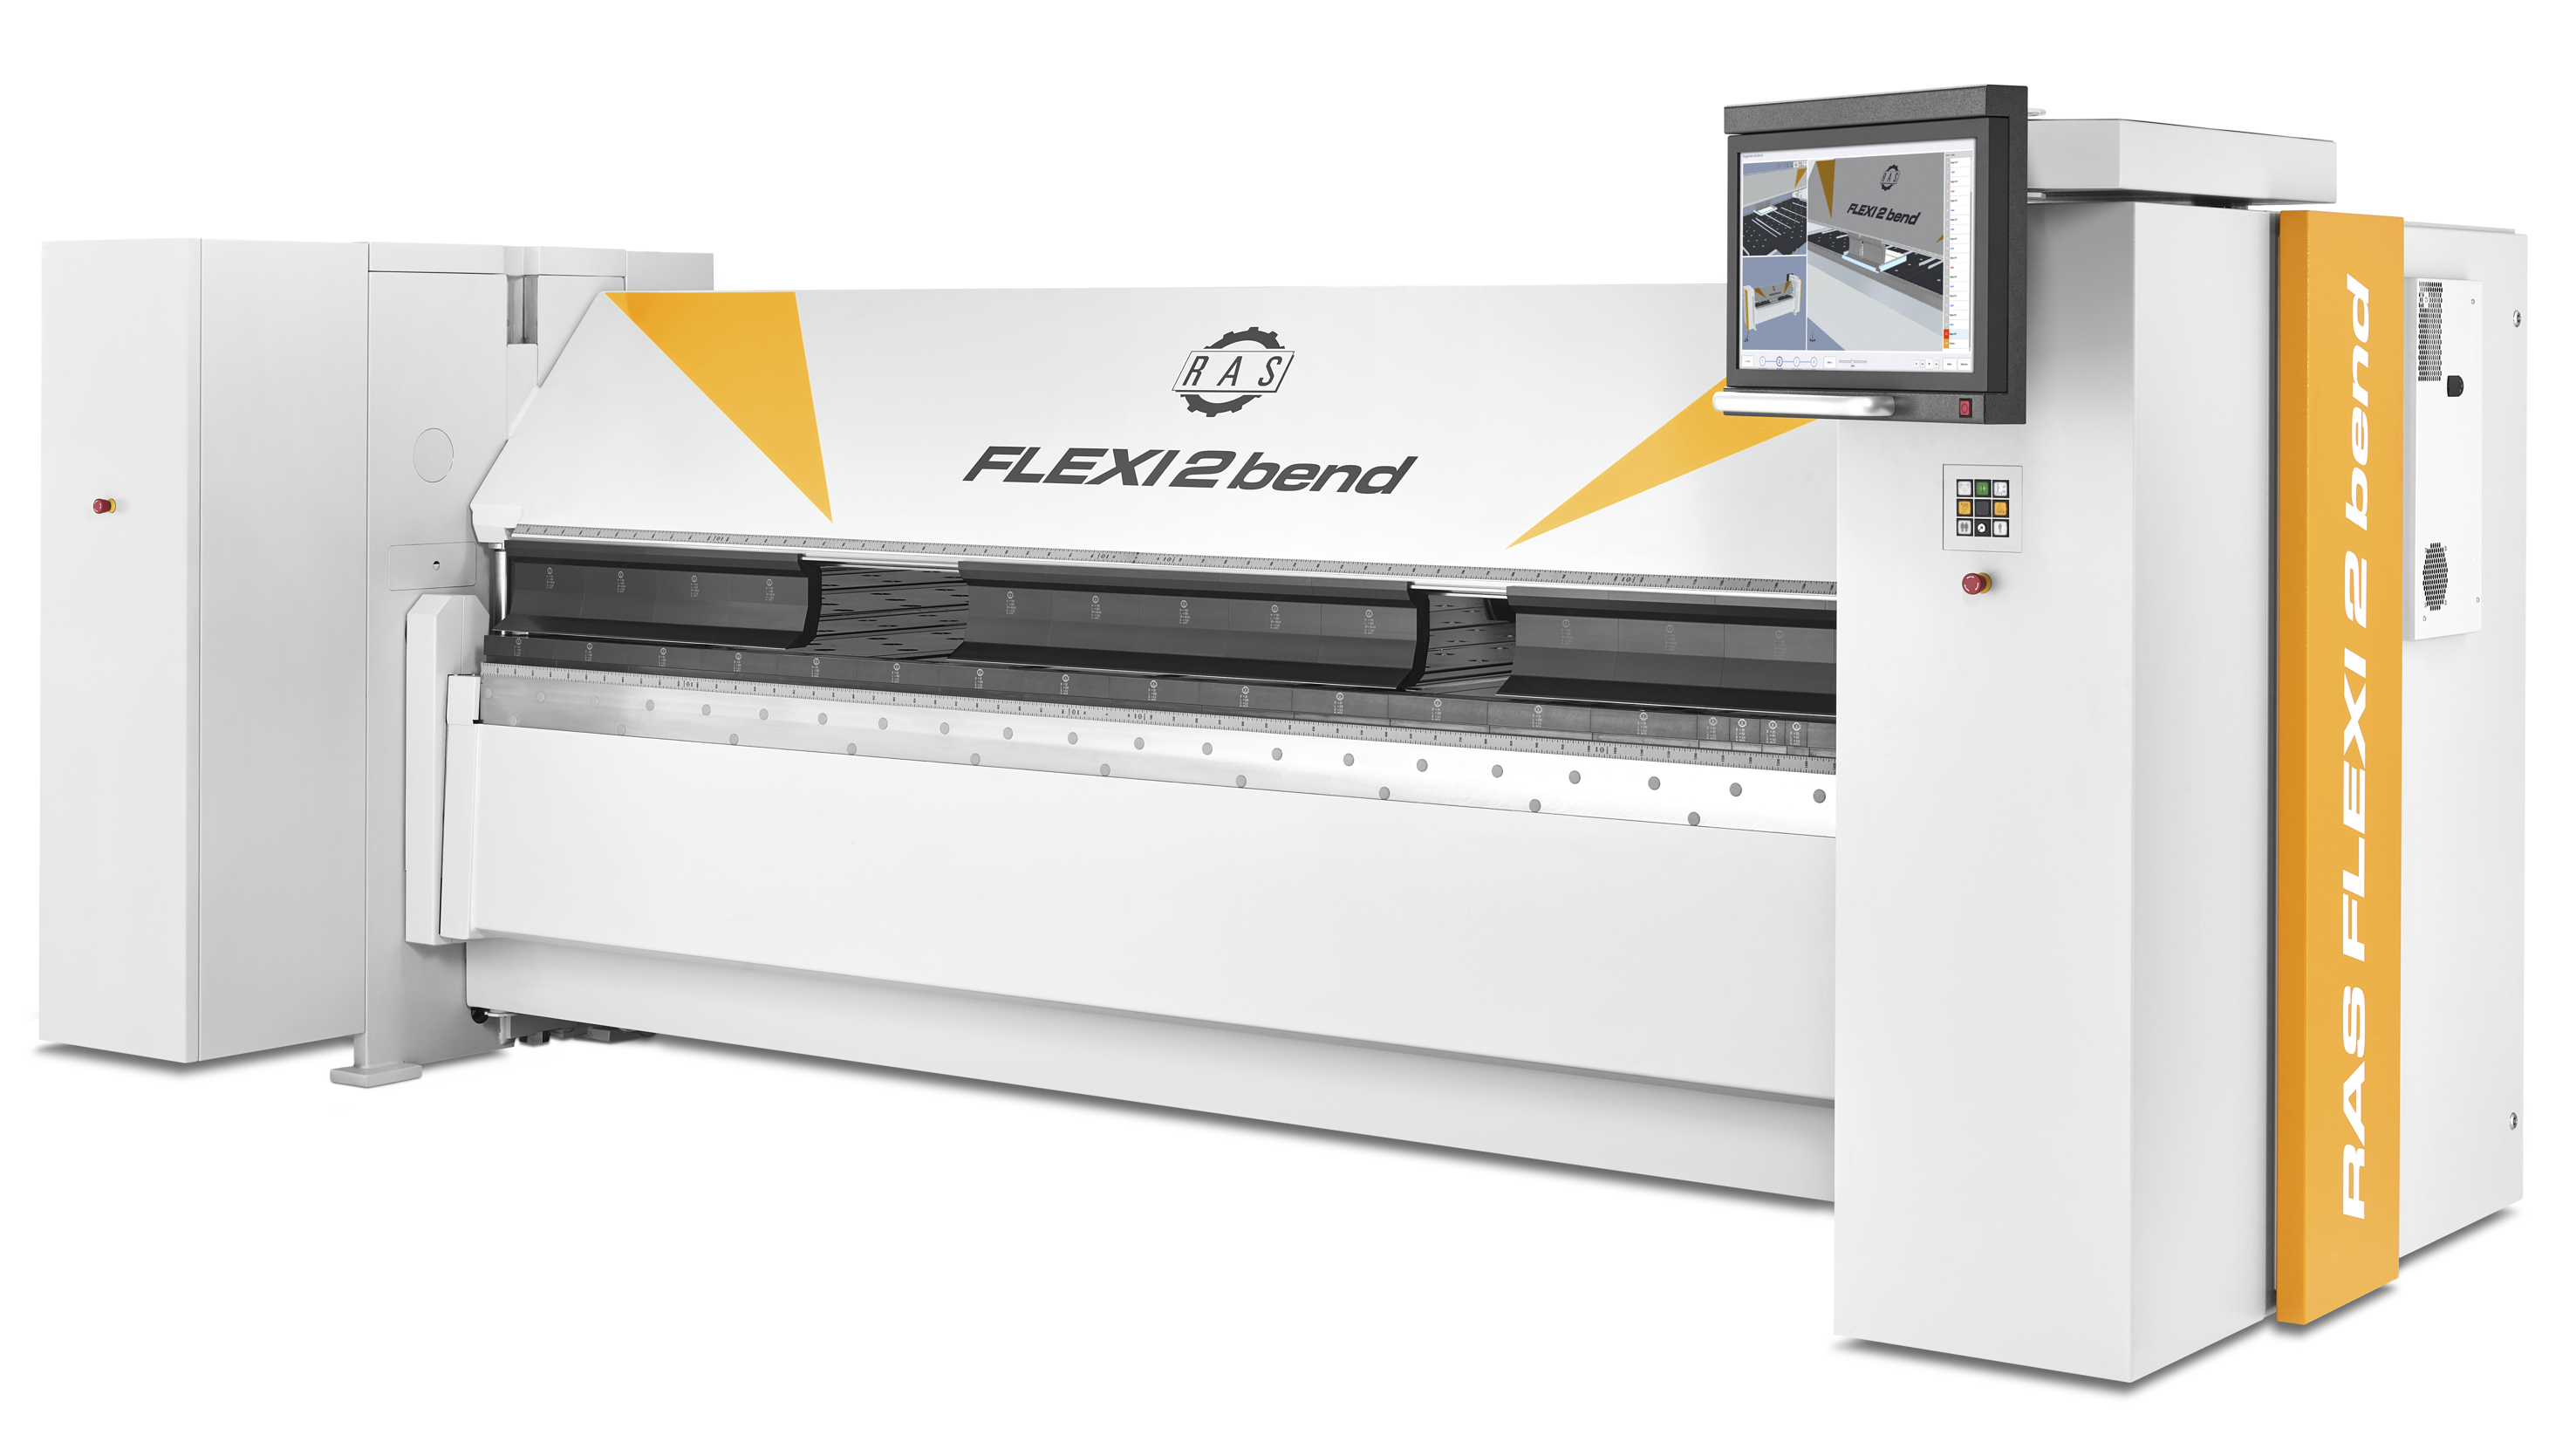 FLEXI2bend metal folding machine